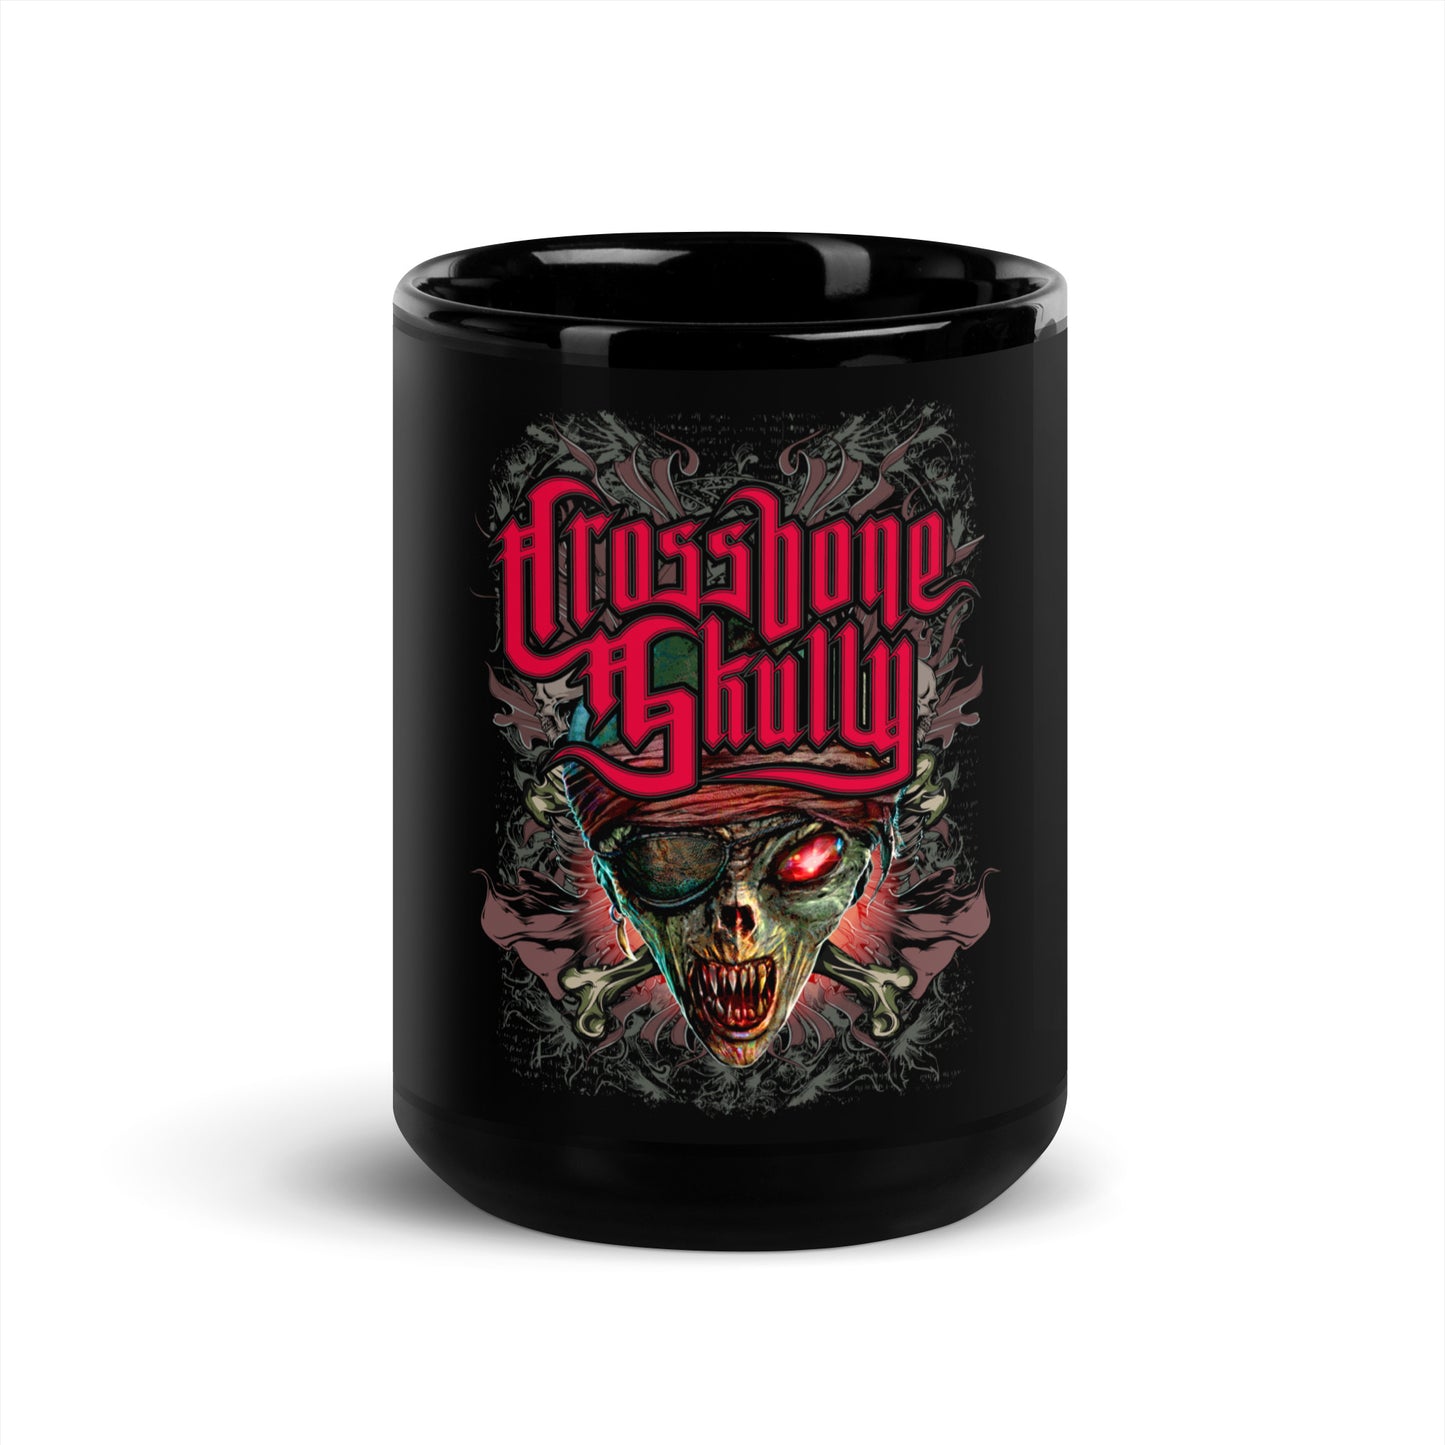 Limited Edition Black Skully Mug